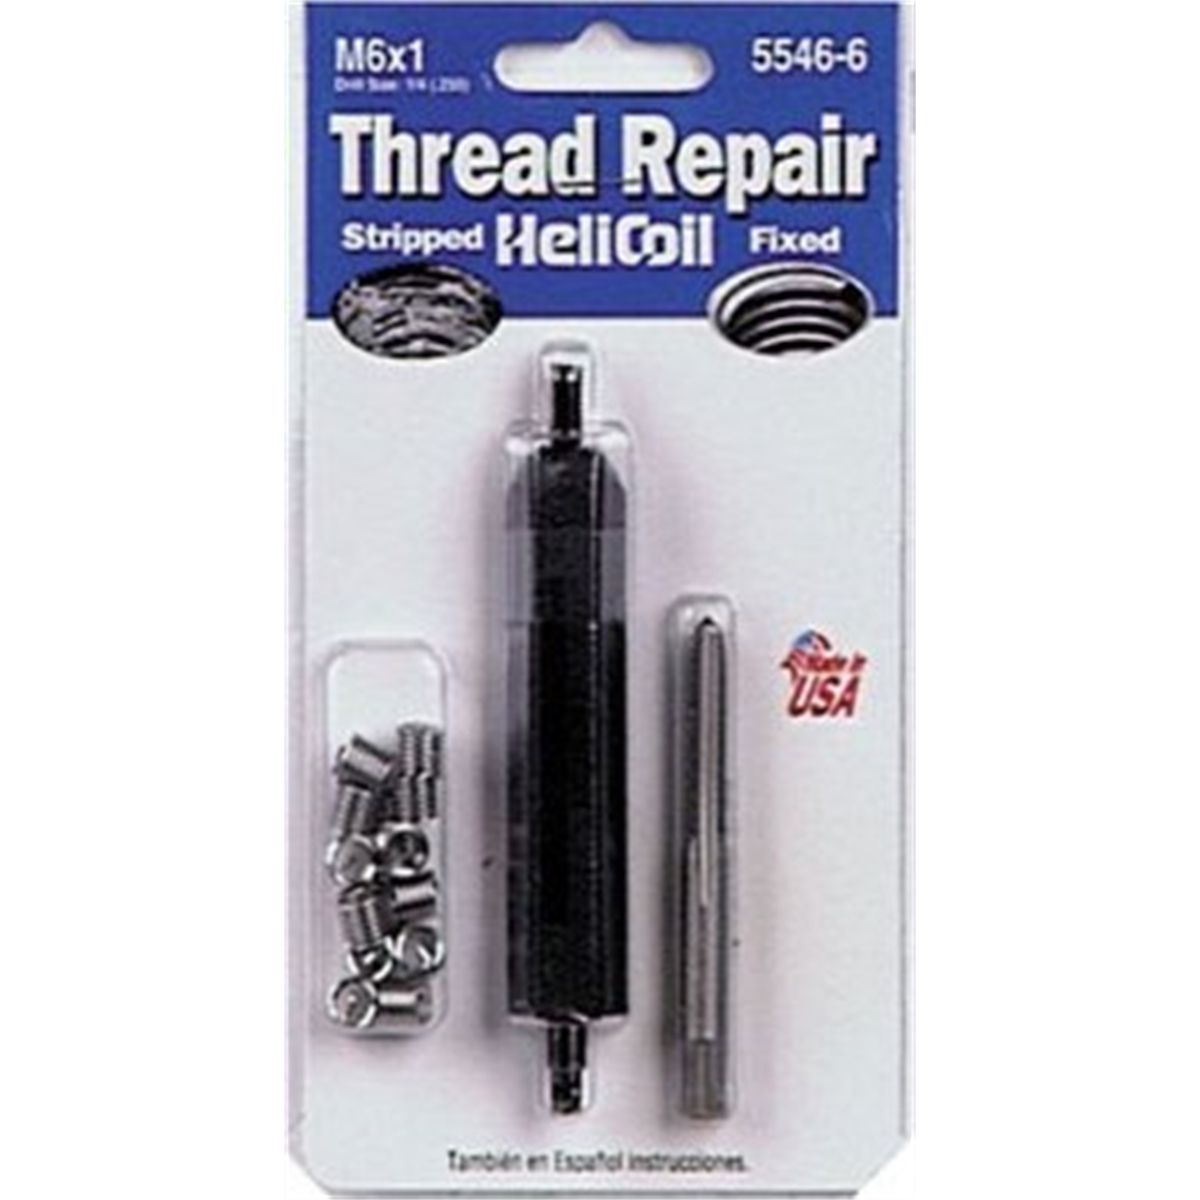 Metric Coarse Thread Repair Kit - M6x1 x 9.0mm